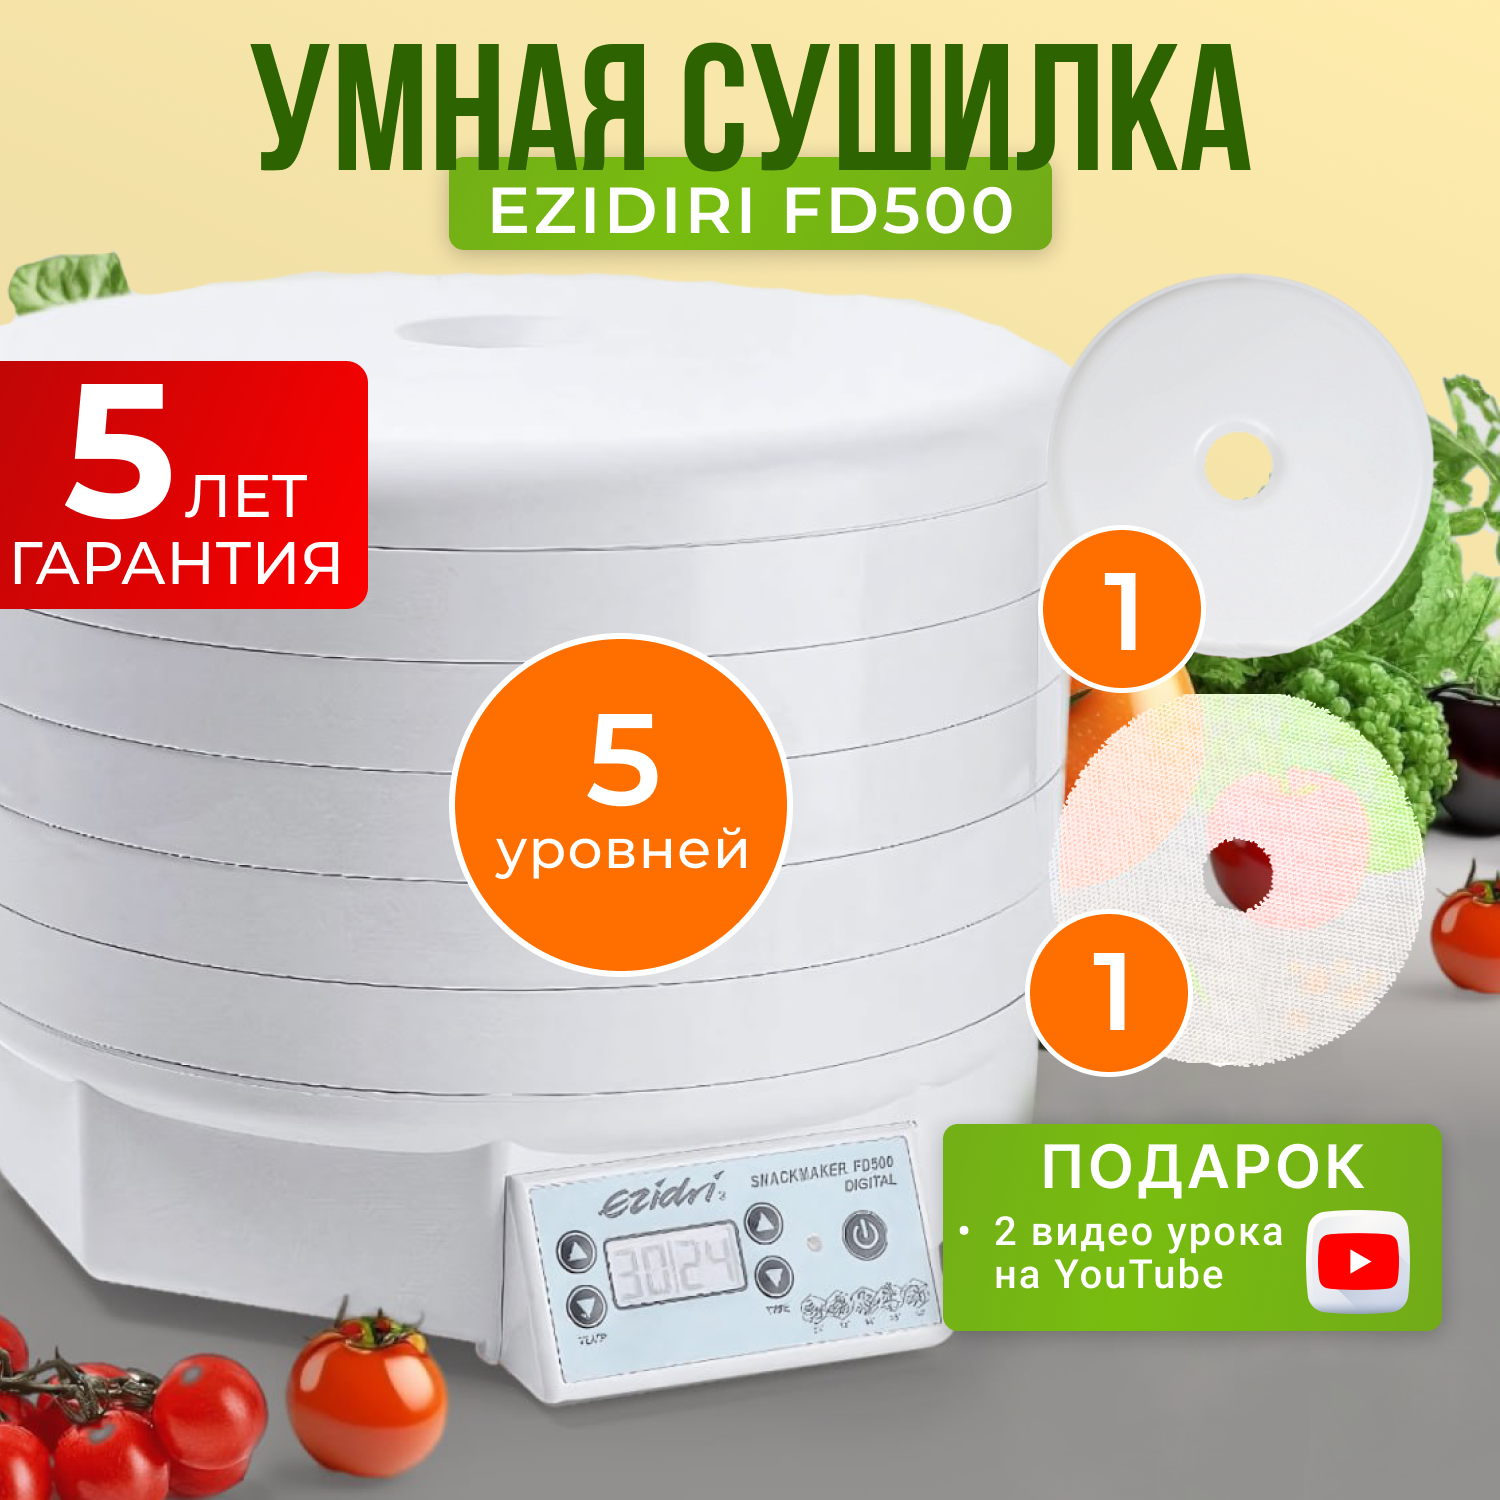 Сушилка для овощей и фруктов Ezidri snackmaker FD500 Digital сушилка для овощей и фруктов ezidri fd500 с 5 поддонами и 10 листами